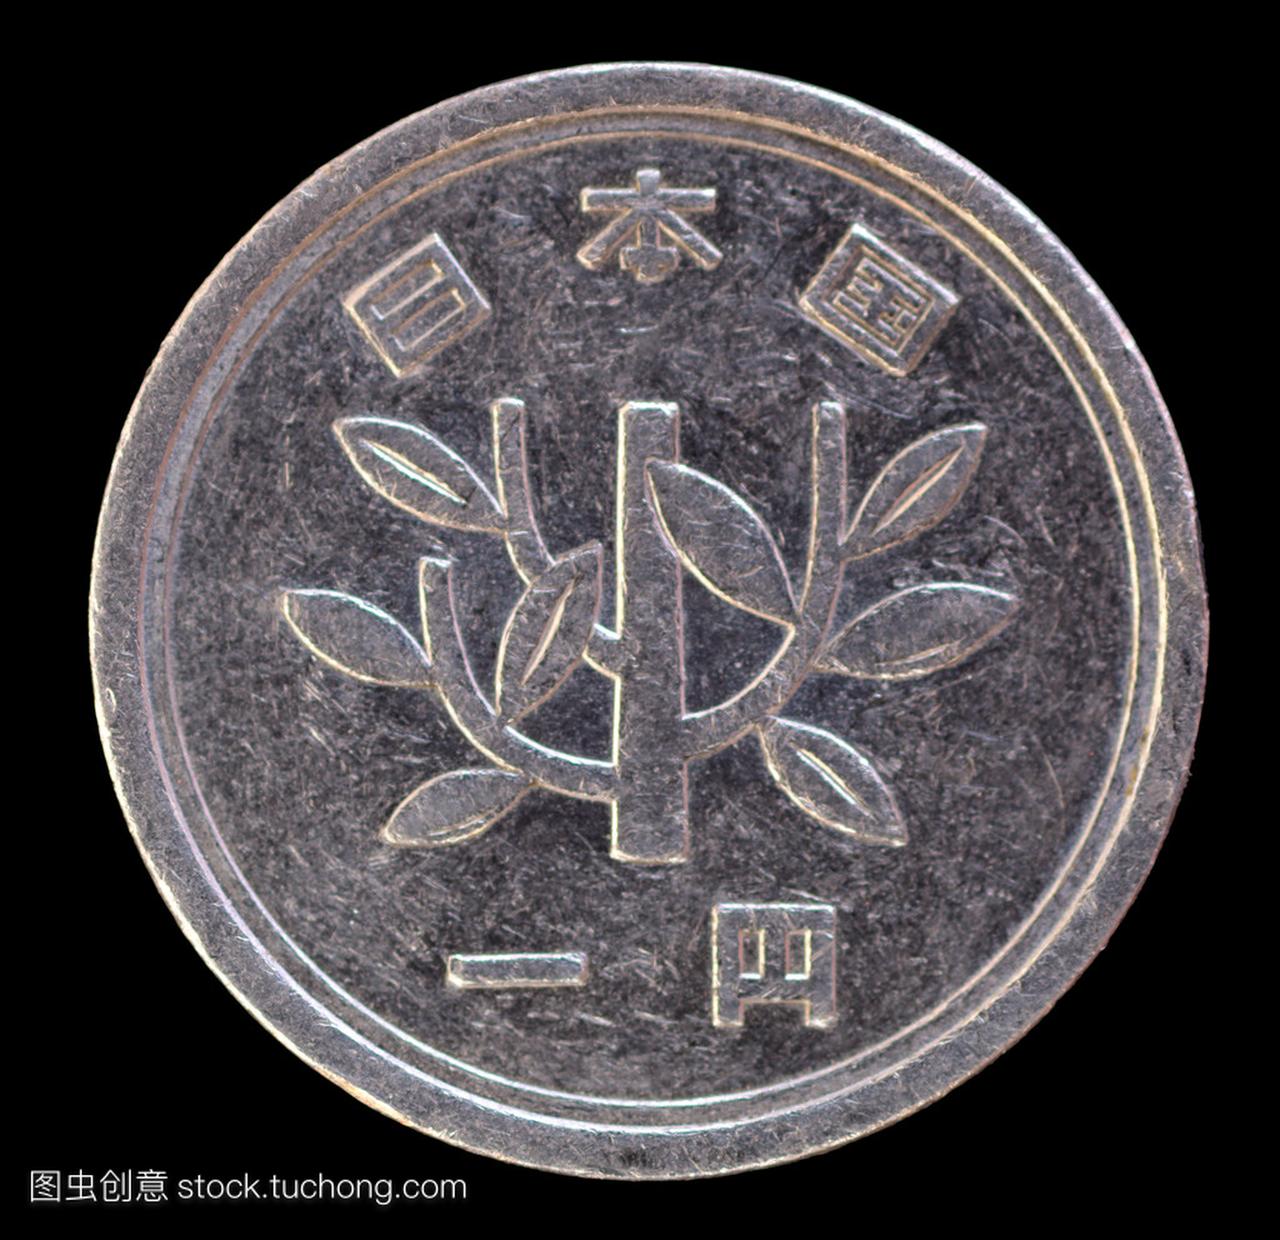 一日元硬币,出具日本描绘一棵小树